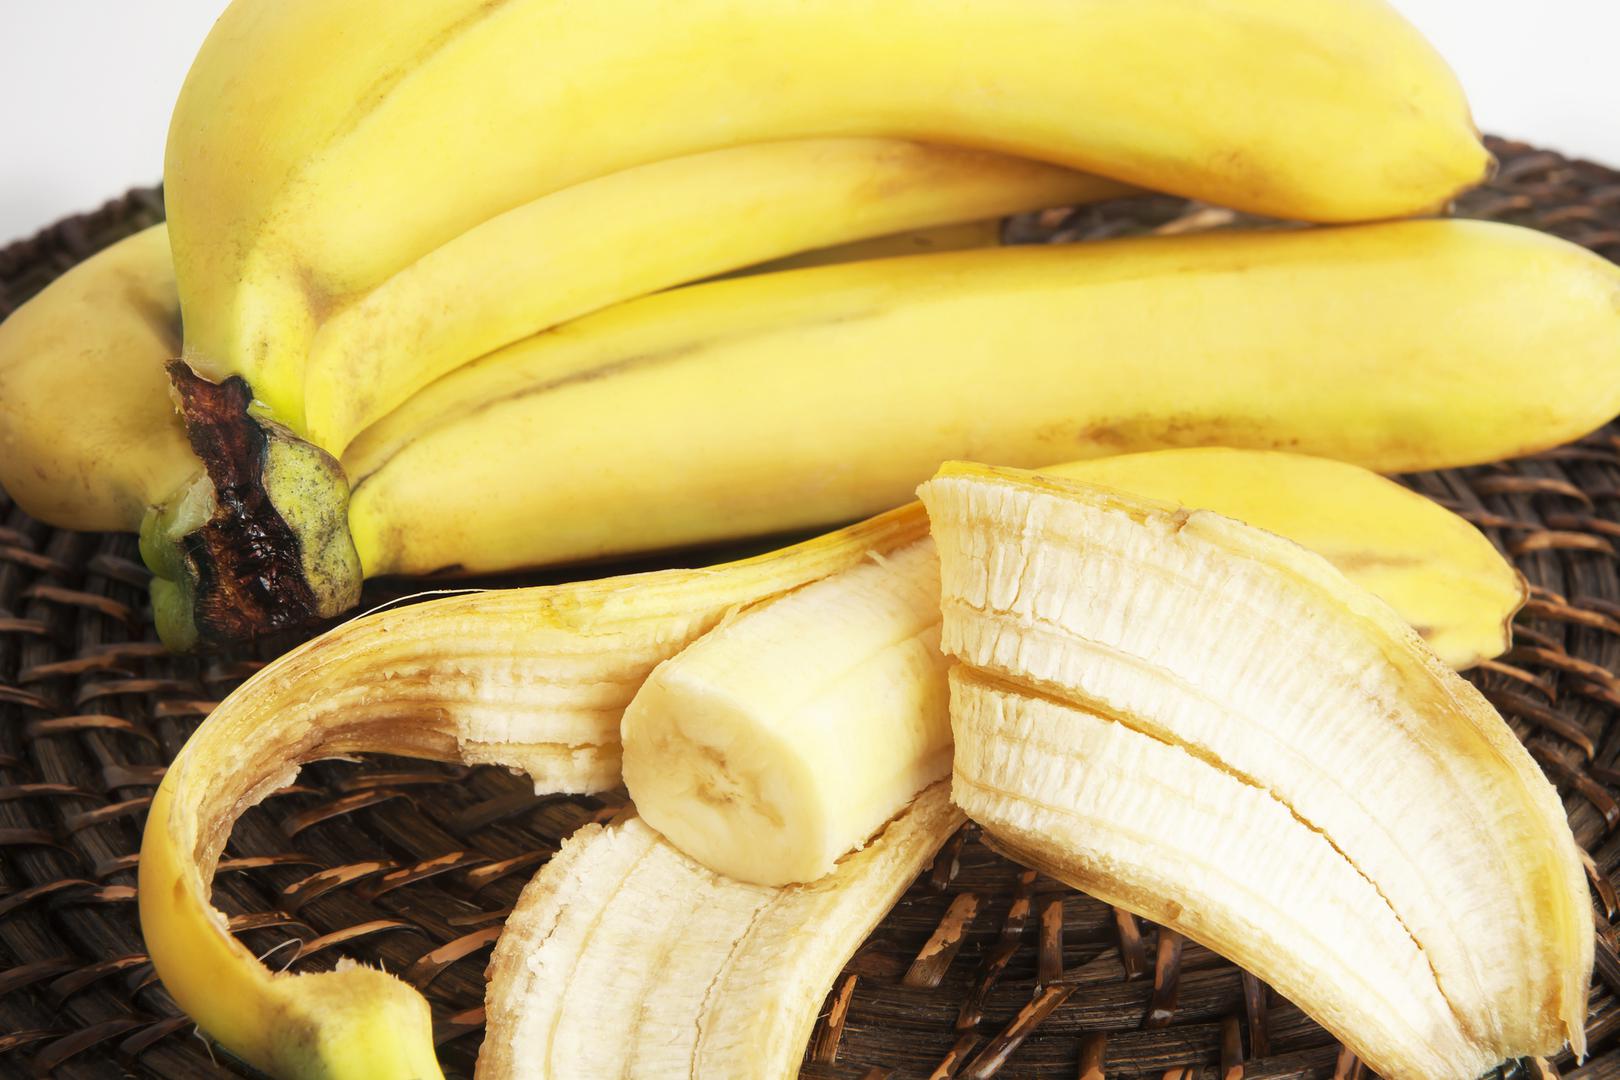 Kada ogulite koru od banane, najvjerojatnije u većini slučajeva odmah završi u smeću, no jeste li znali da od kore banane možete imati jednake koristi kao i samog ploda. Bananina kora sadrži enzimatska, antibiotska i antigljivična svojstva zbog kojih bi je trebali dobro iskoristiti, a ako ne znate kako, doznajte u nastavku članka.